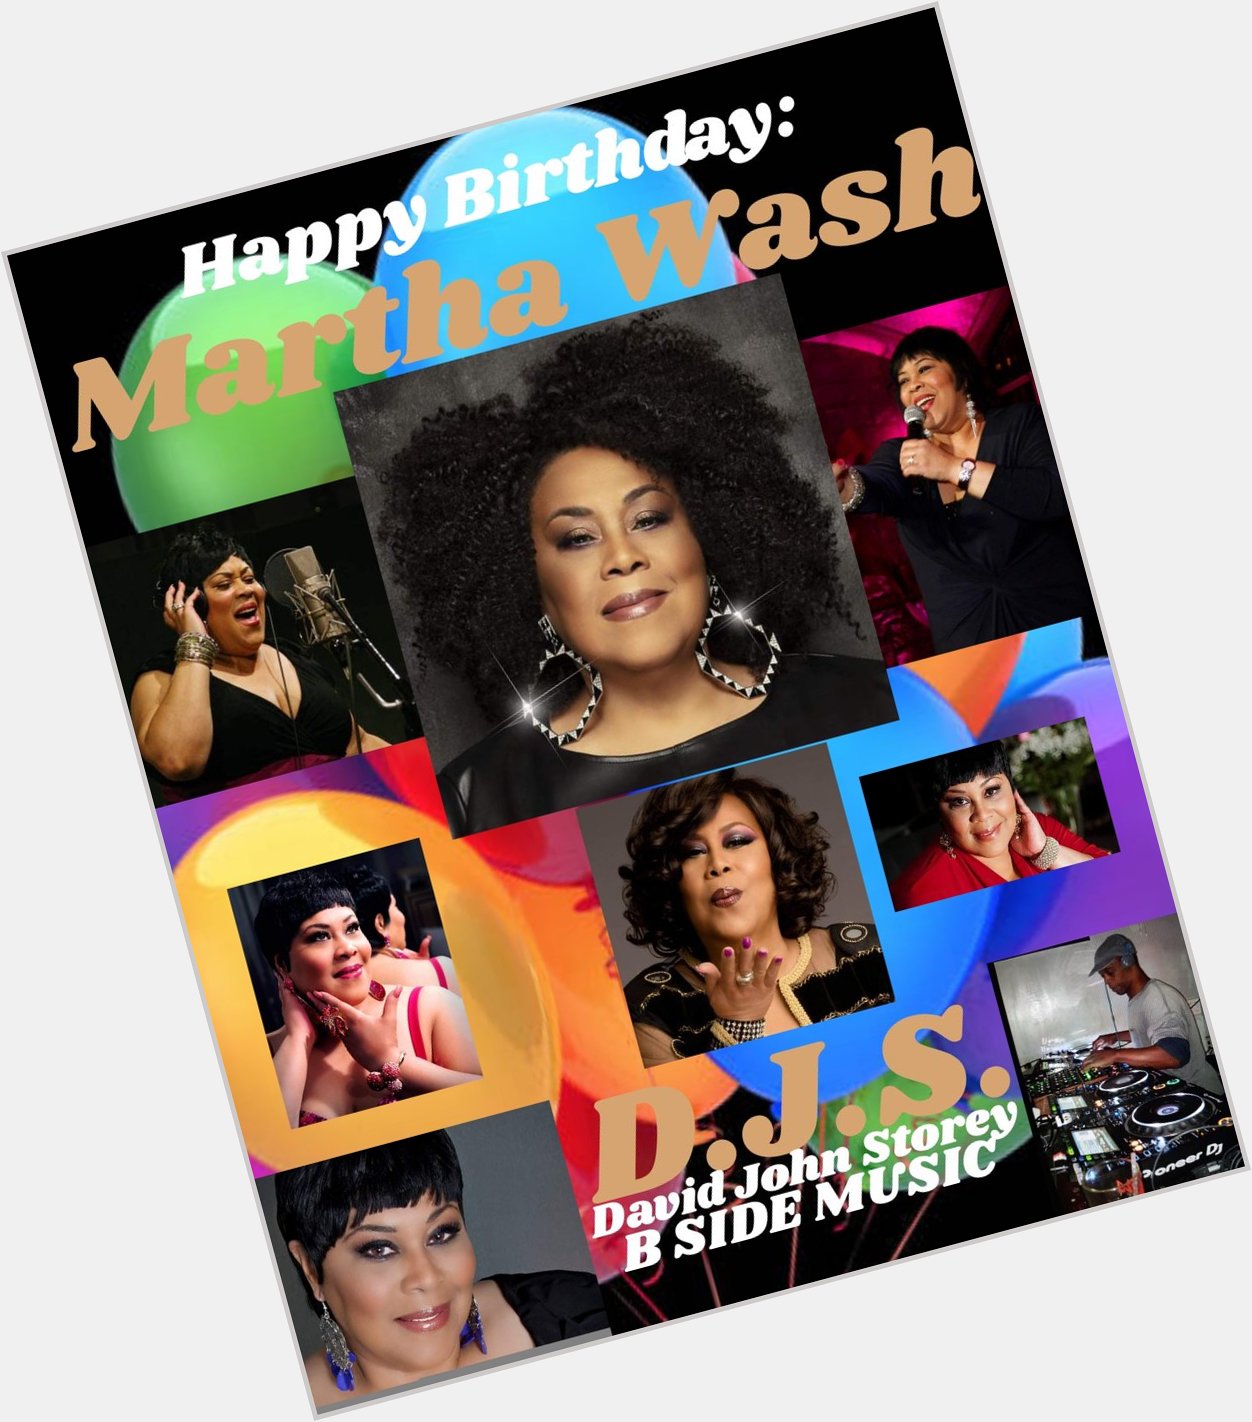 I(D.J.S.)\"B SIDE\" wish Singer: \"MARTHA WASH\" a Happy Birthday!!!! 